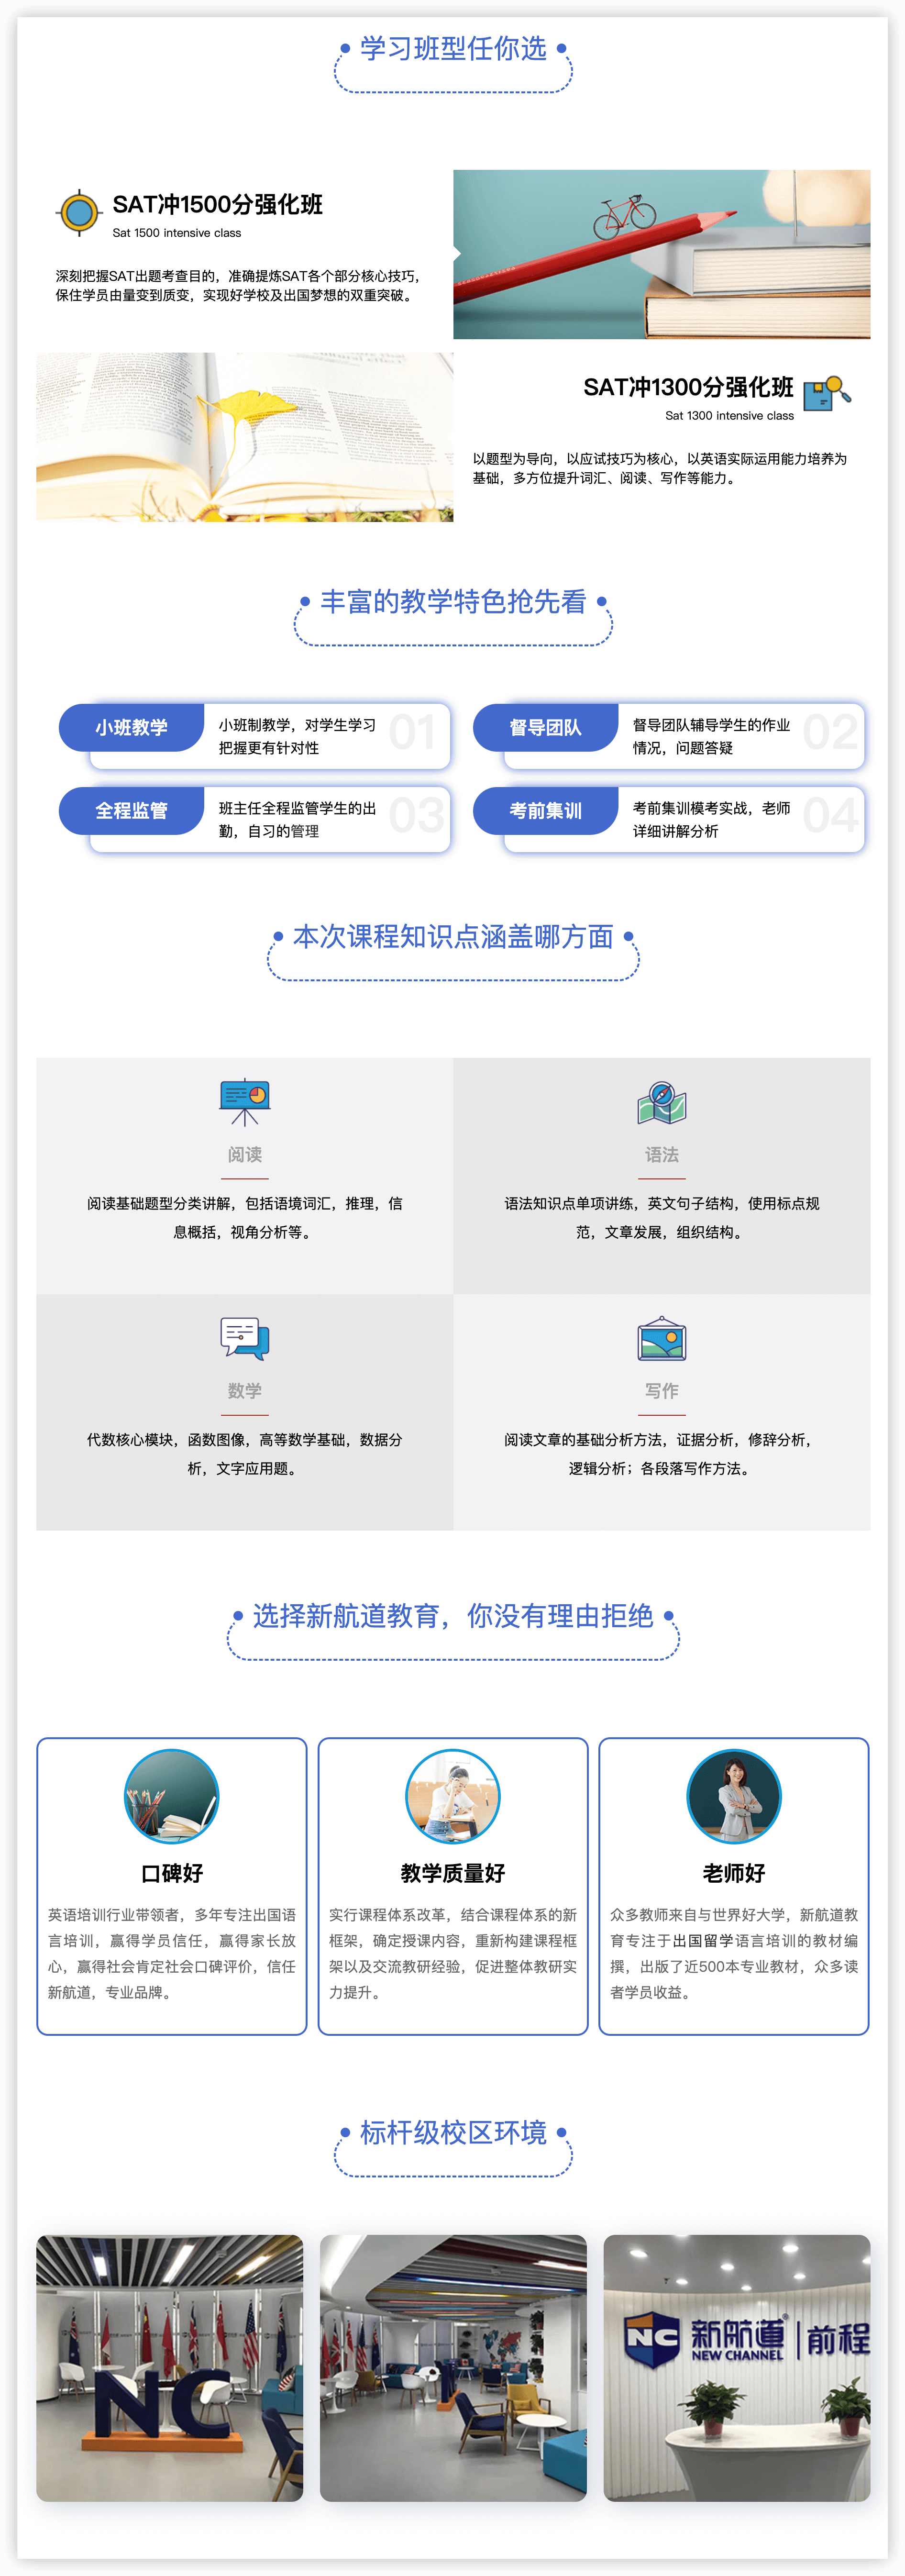 新航道-郑州SAT强化课程